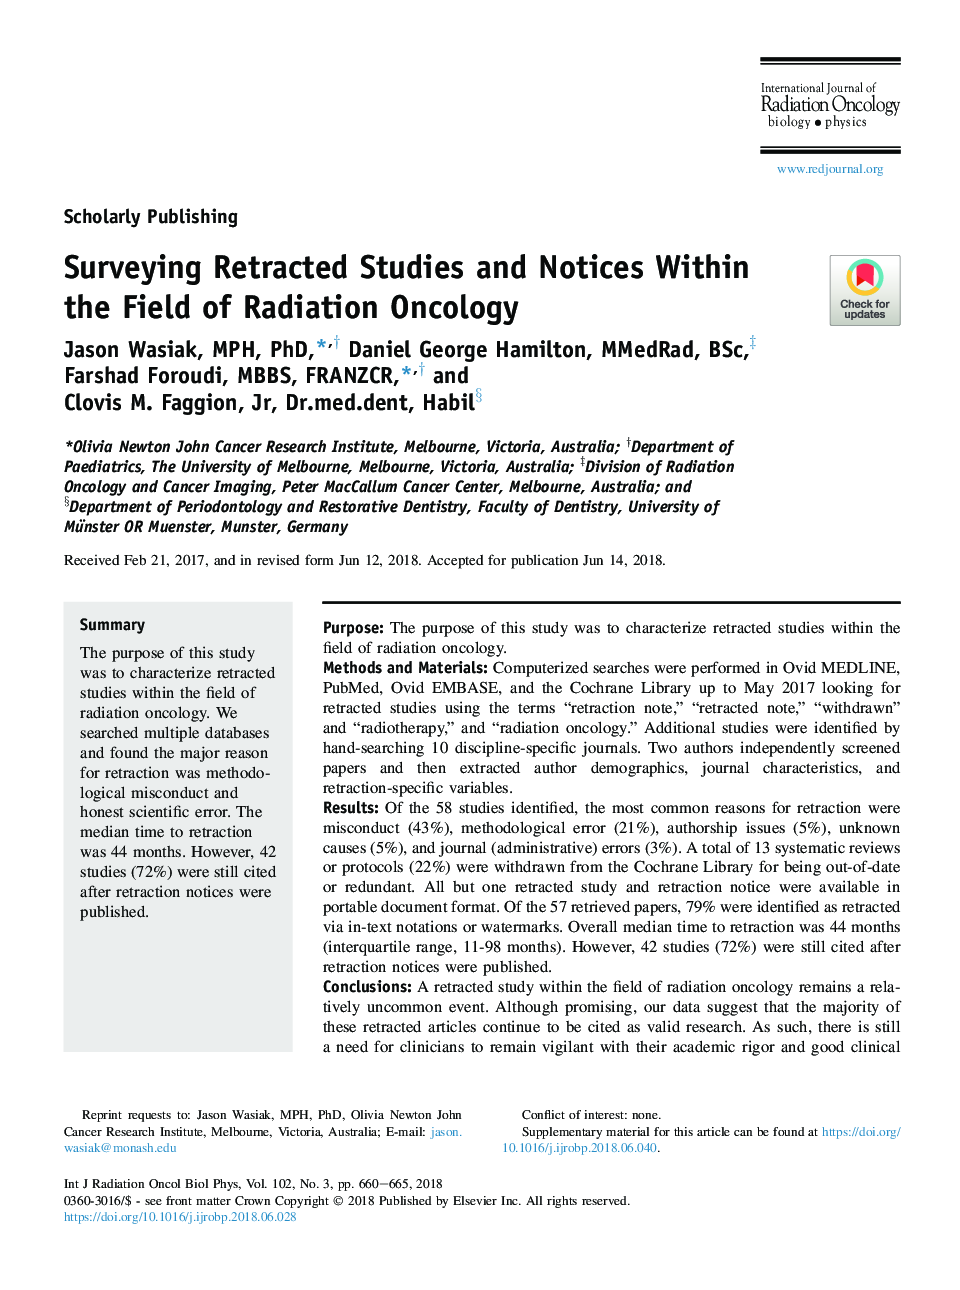 نظرسنجی مطالعات و اطلاعیه های بازپرداخت شده در زمینه انکولوژی رادیولوژی